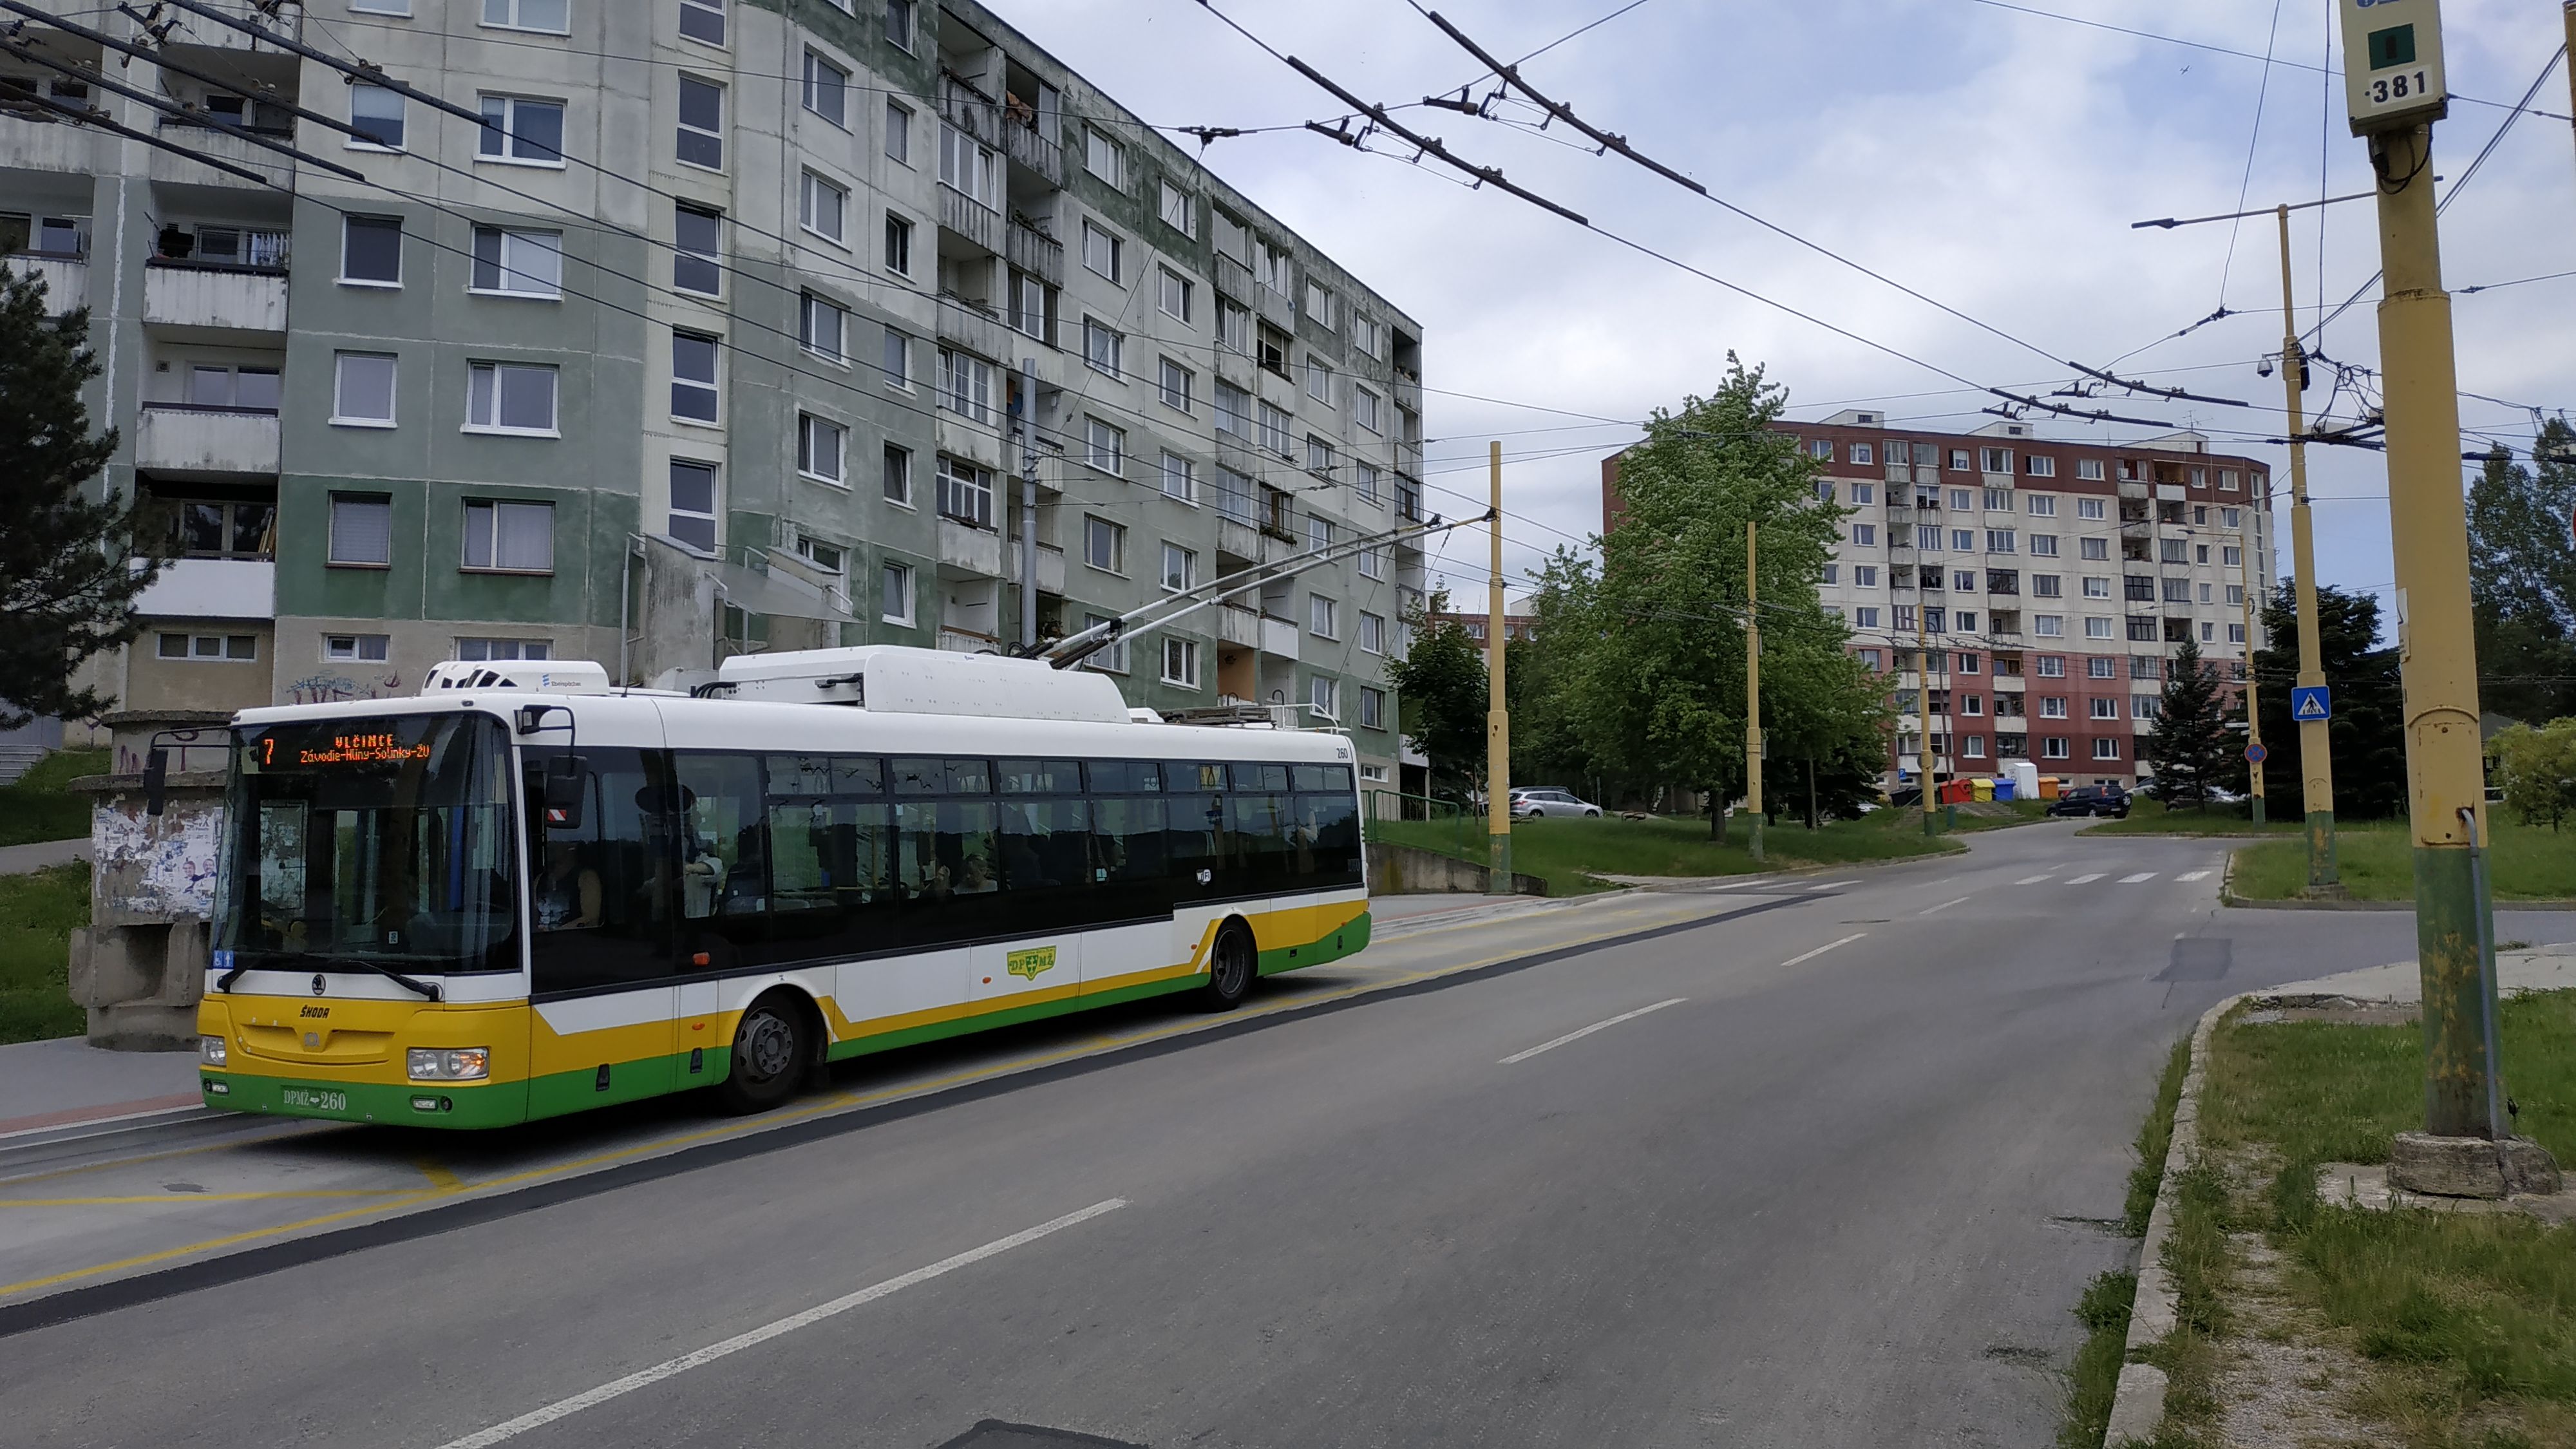 Standardních trolejbusù s karoserií SOR bylo dodáno v letech 2012-3 celkem 7. Zde na koneèné Stodolova na kopcovitém sídlišti Hájik odjíždí doplòková linka 7 smìrem do jižních sídliš� a k univerzitnímu kampusu.